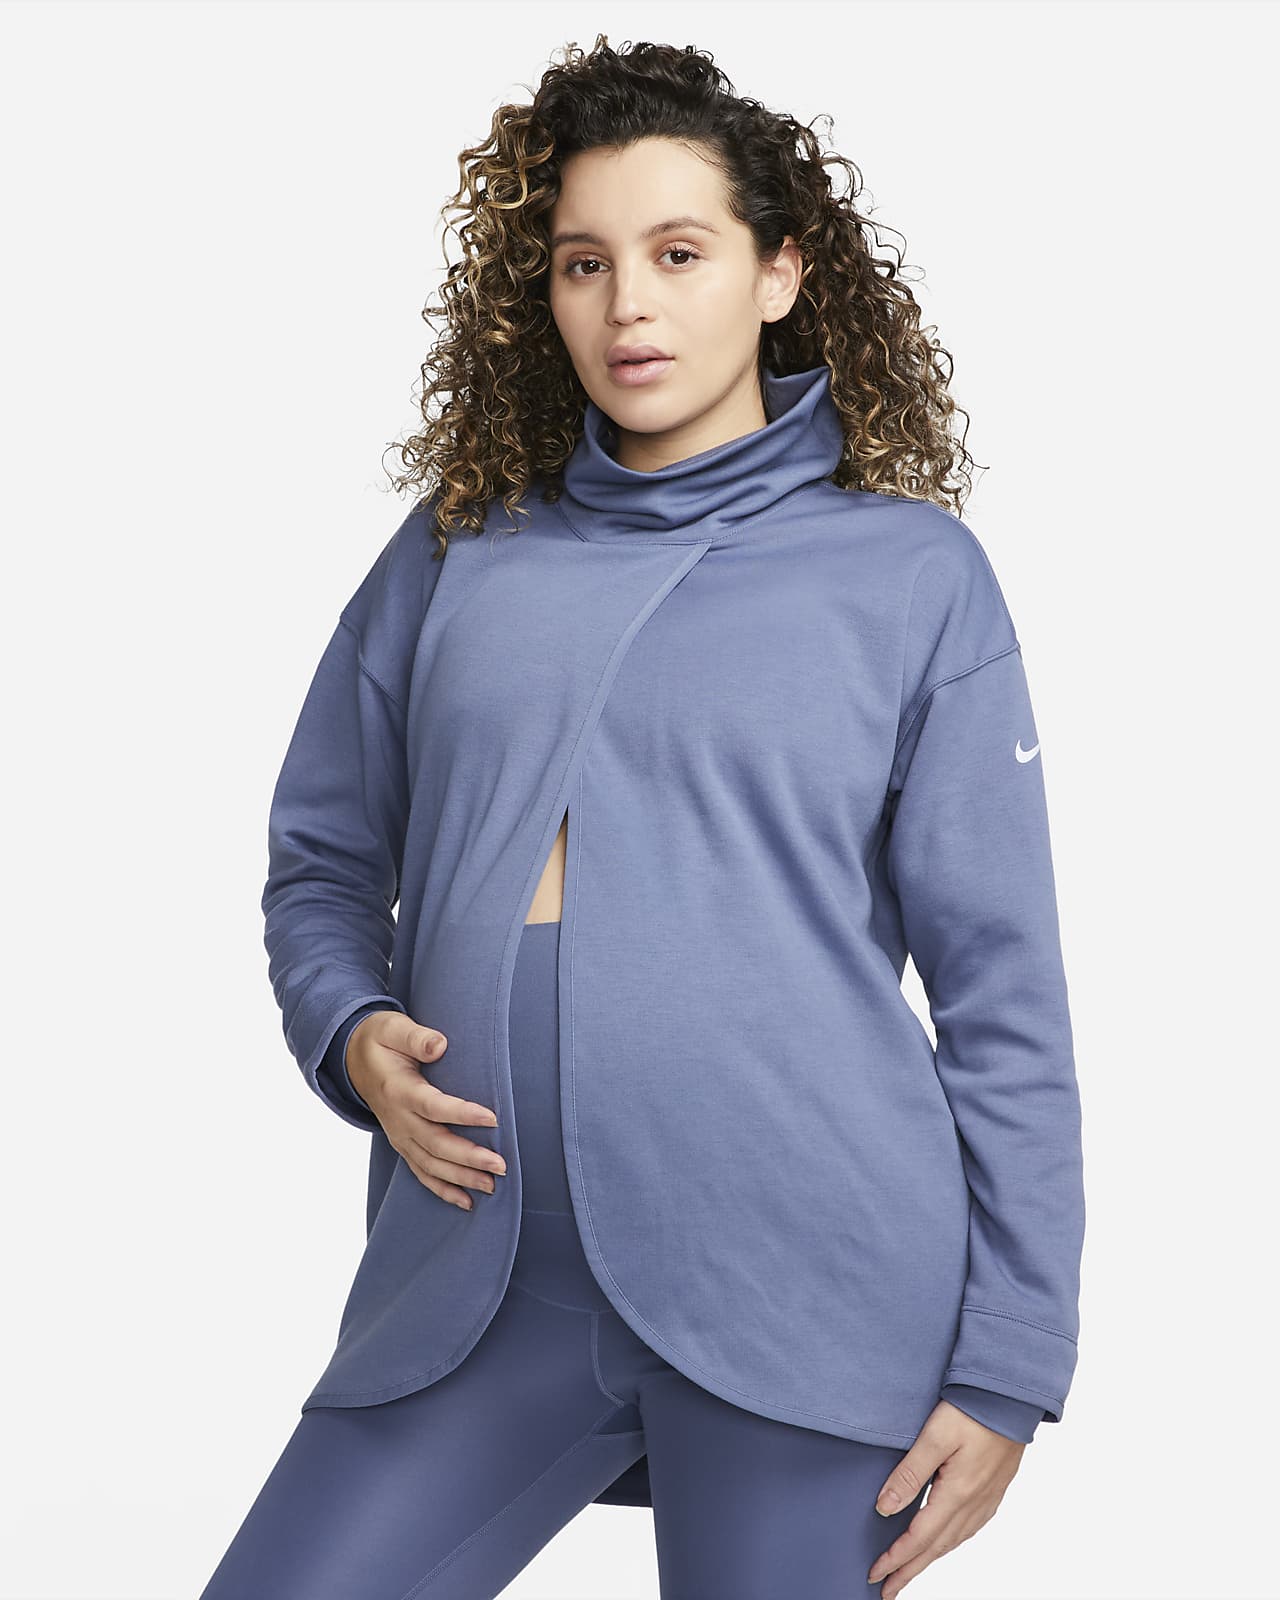 Pull réversible Nike (M) pour femme (maternité)